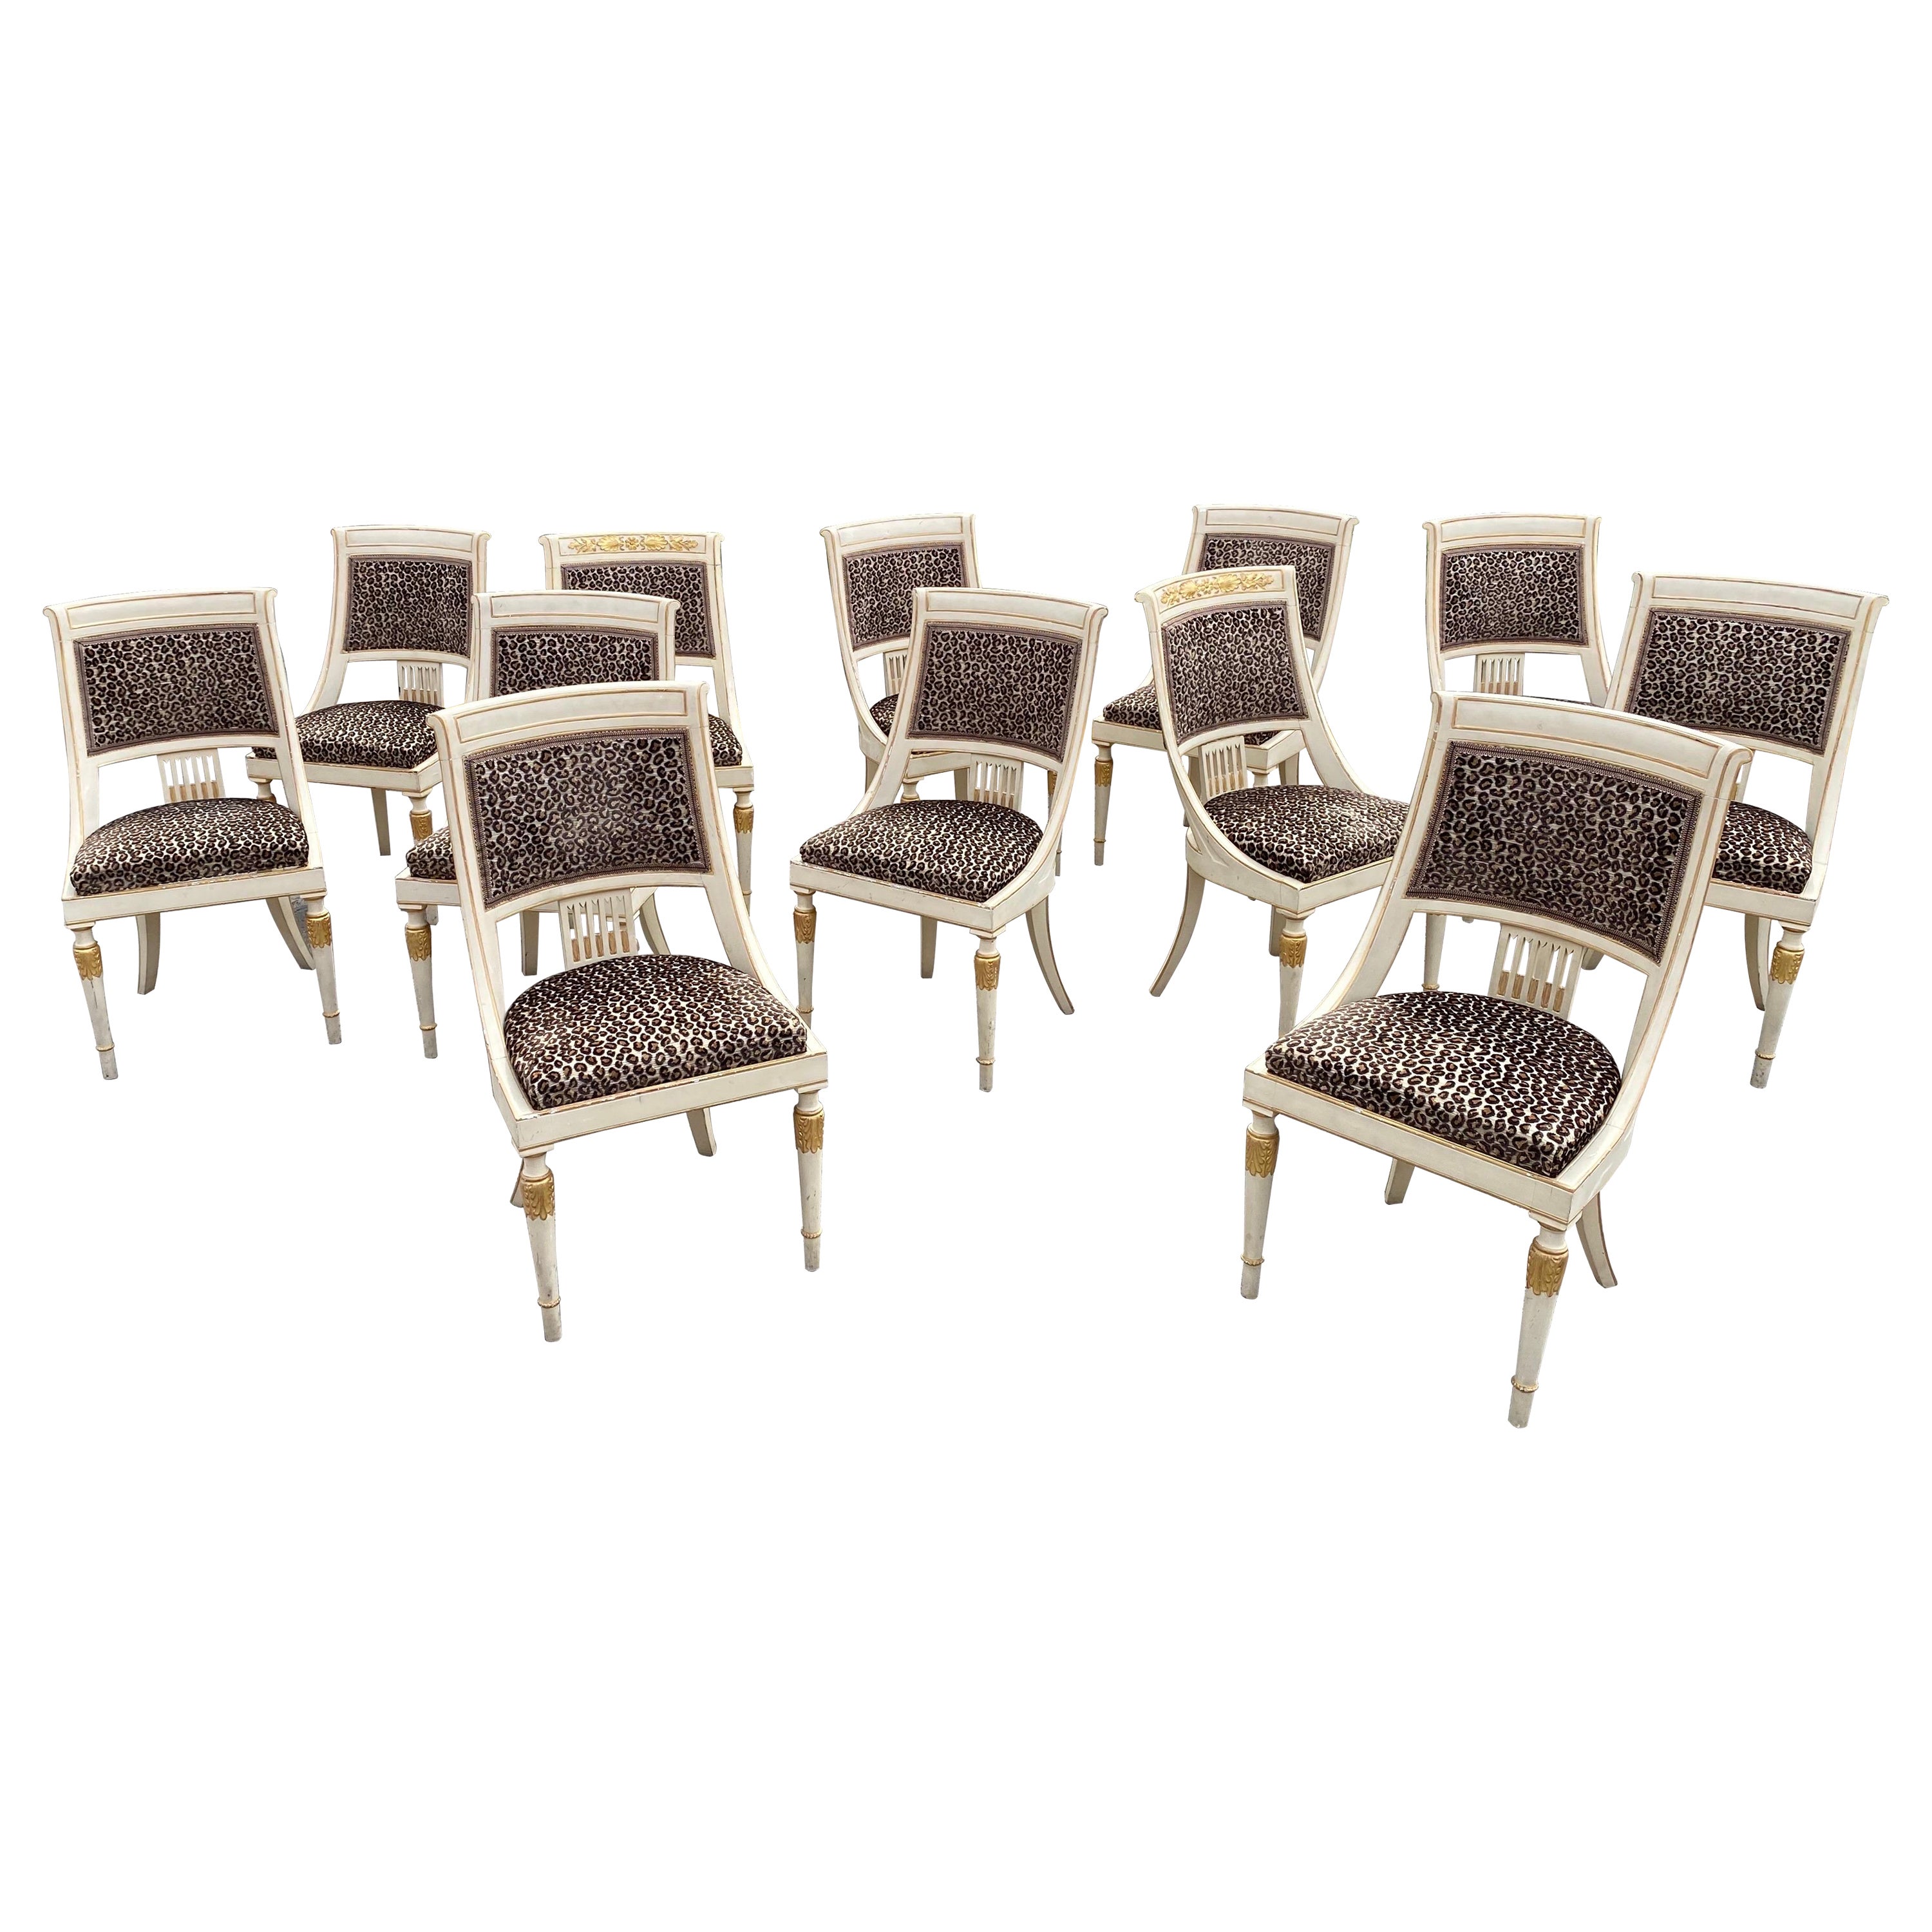 Suite de 12 chaises de style Empire datant d'environ 1970/1980 dans le style de la Maison Romeo